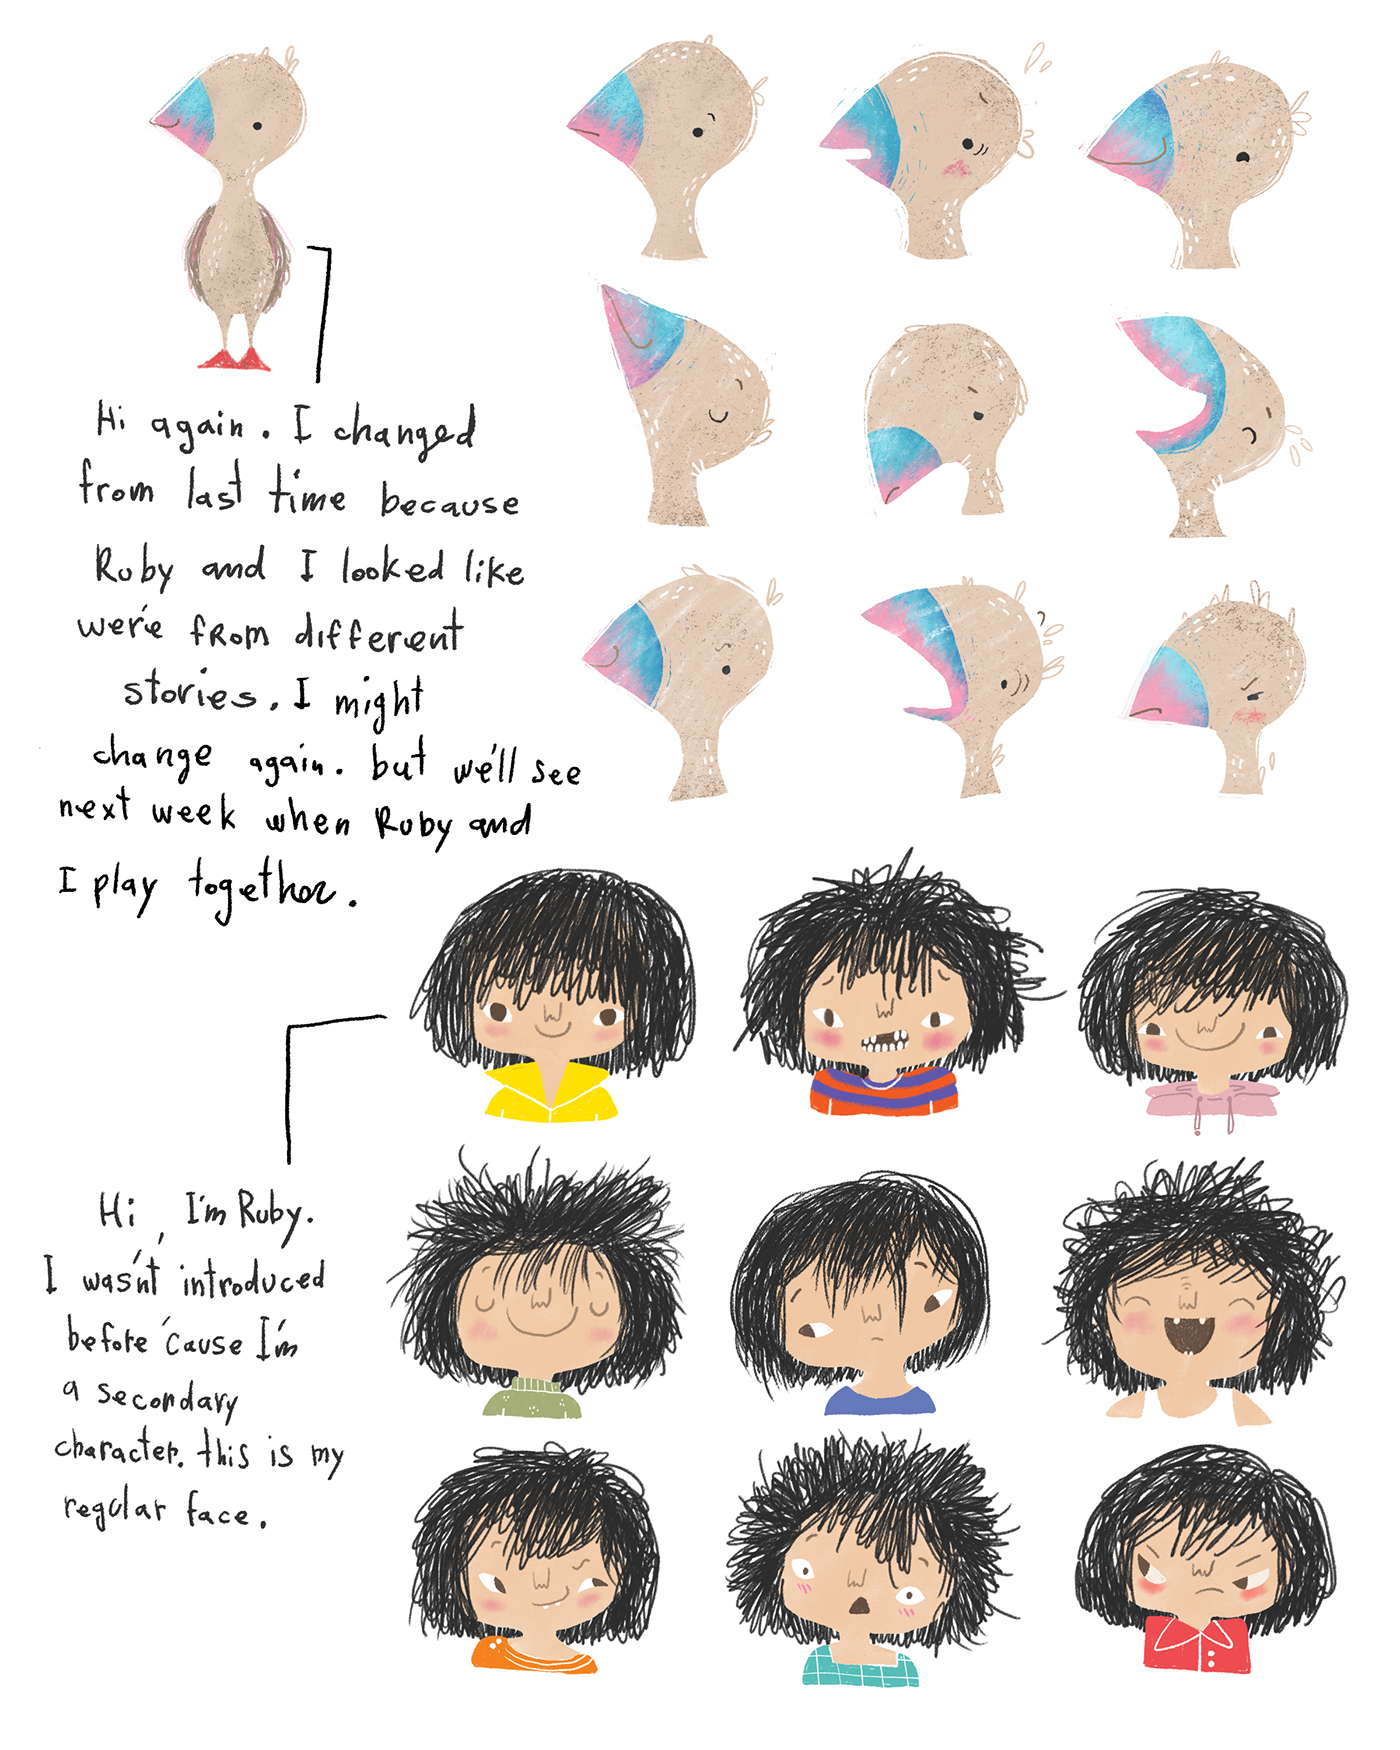 childrens books picture books kidlit kidlitart board books digital illustration Character design  Character character study Illustrated book